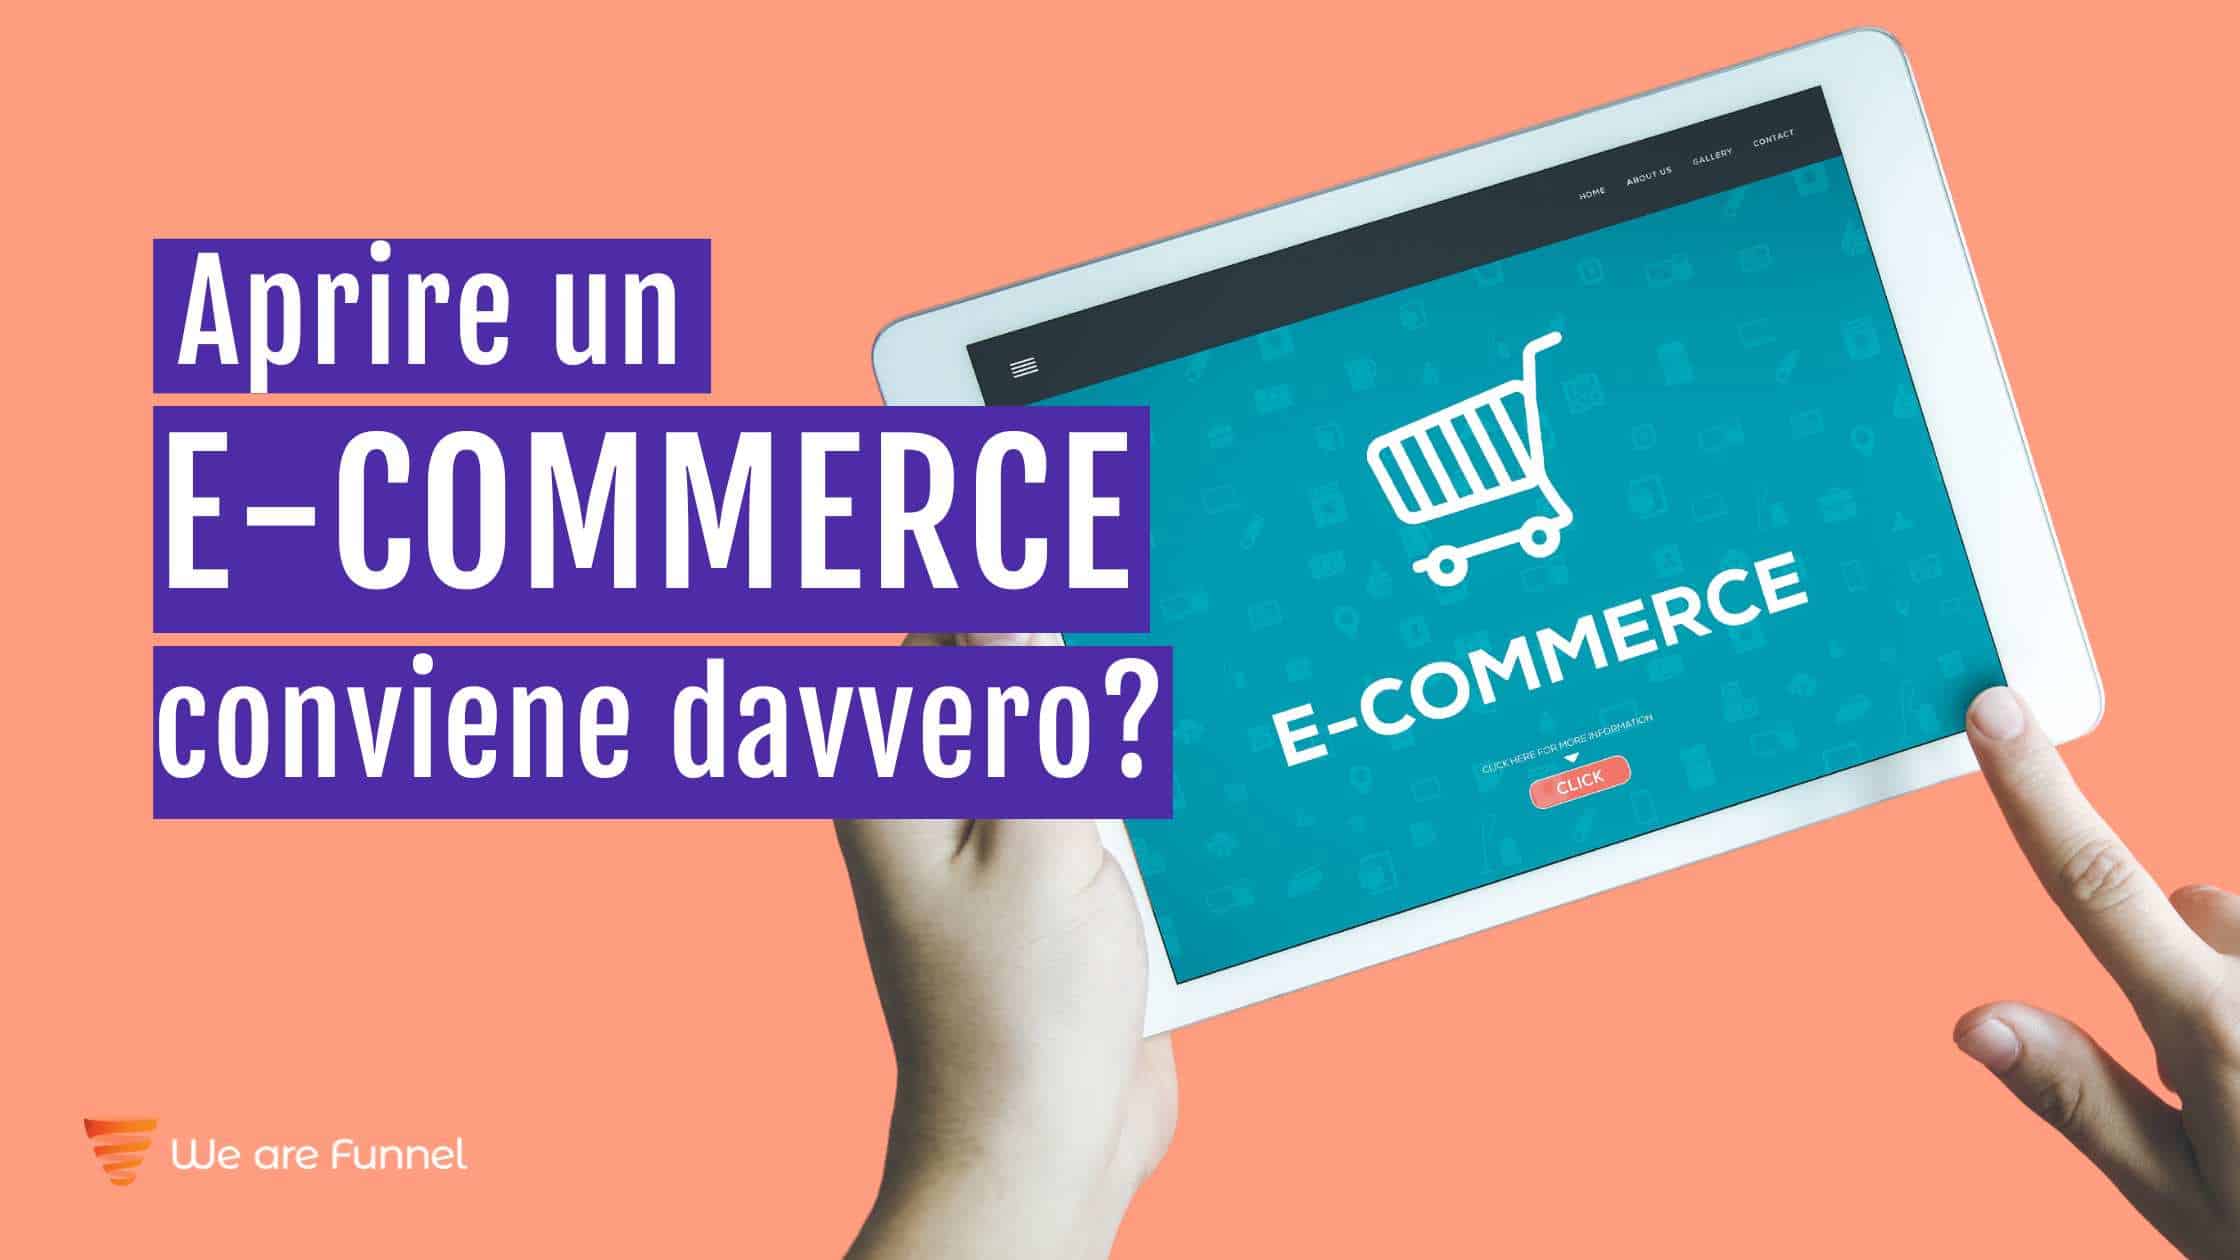 Aprire un e-commerce conviene davvero?